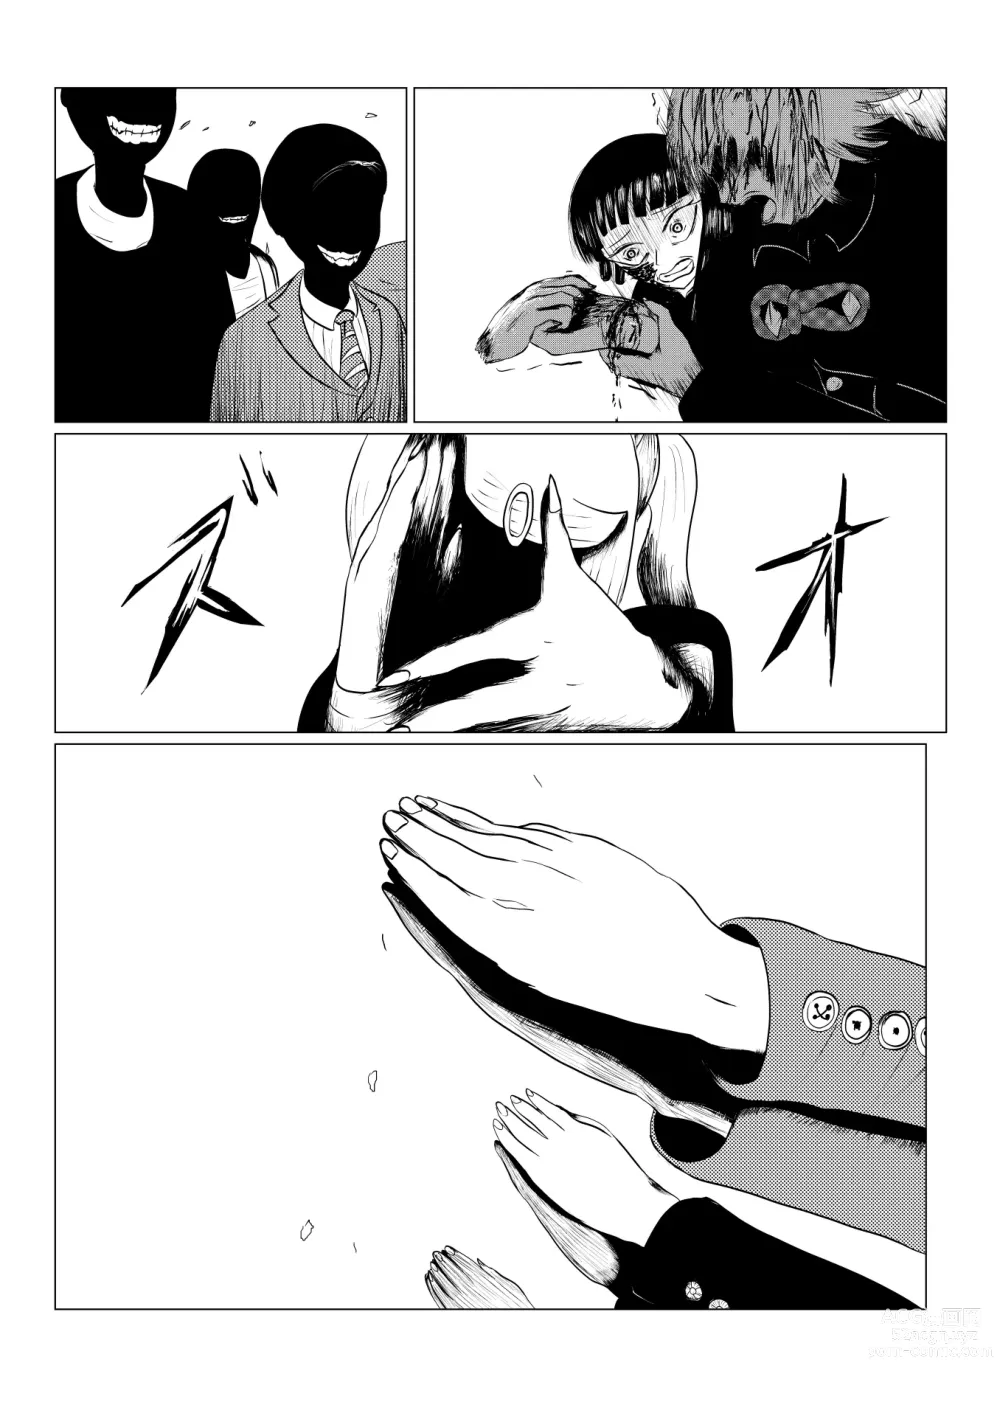 Page 213 of doujinshi HYPE-C Kutourufu Shinwa Musou Roku